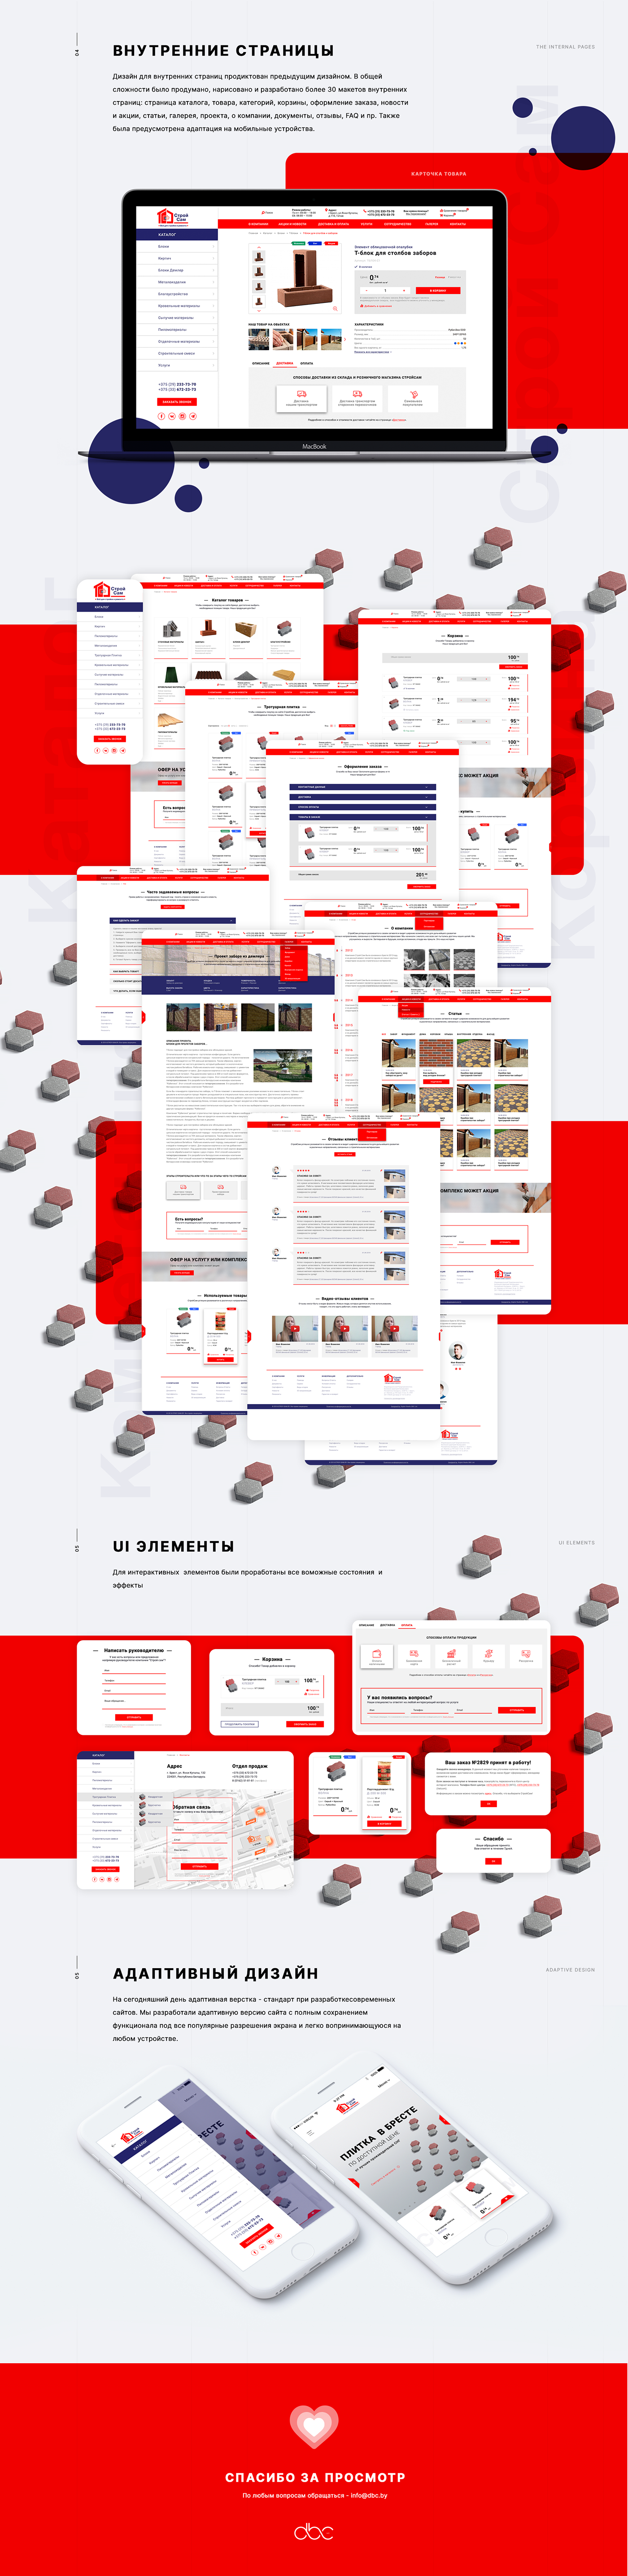 Web UI design building agency business Ecommerce Online Shoppping онлайн-магазин строительство